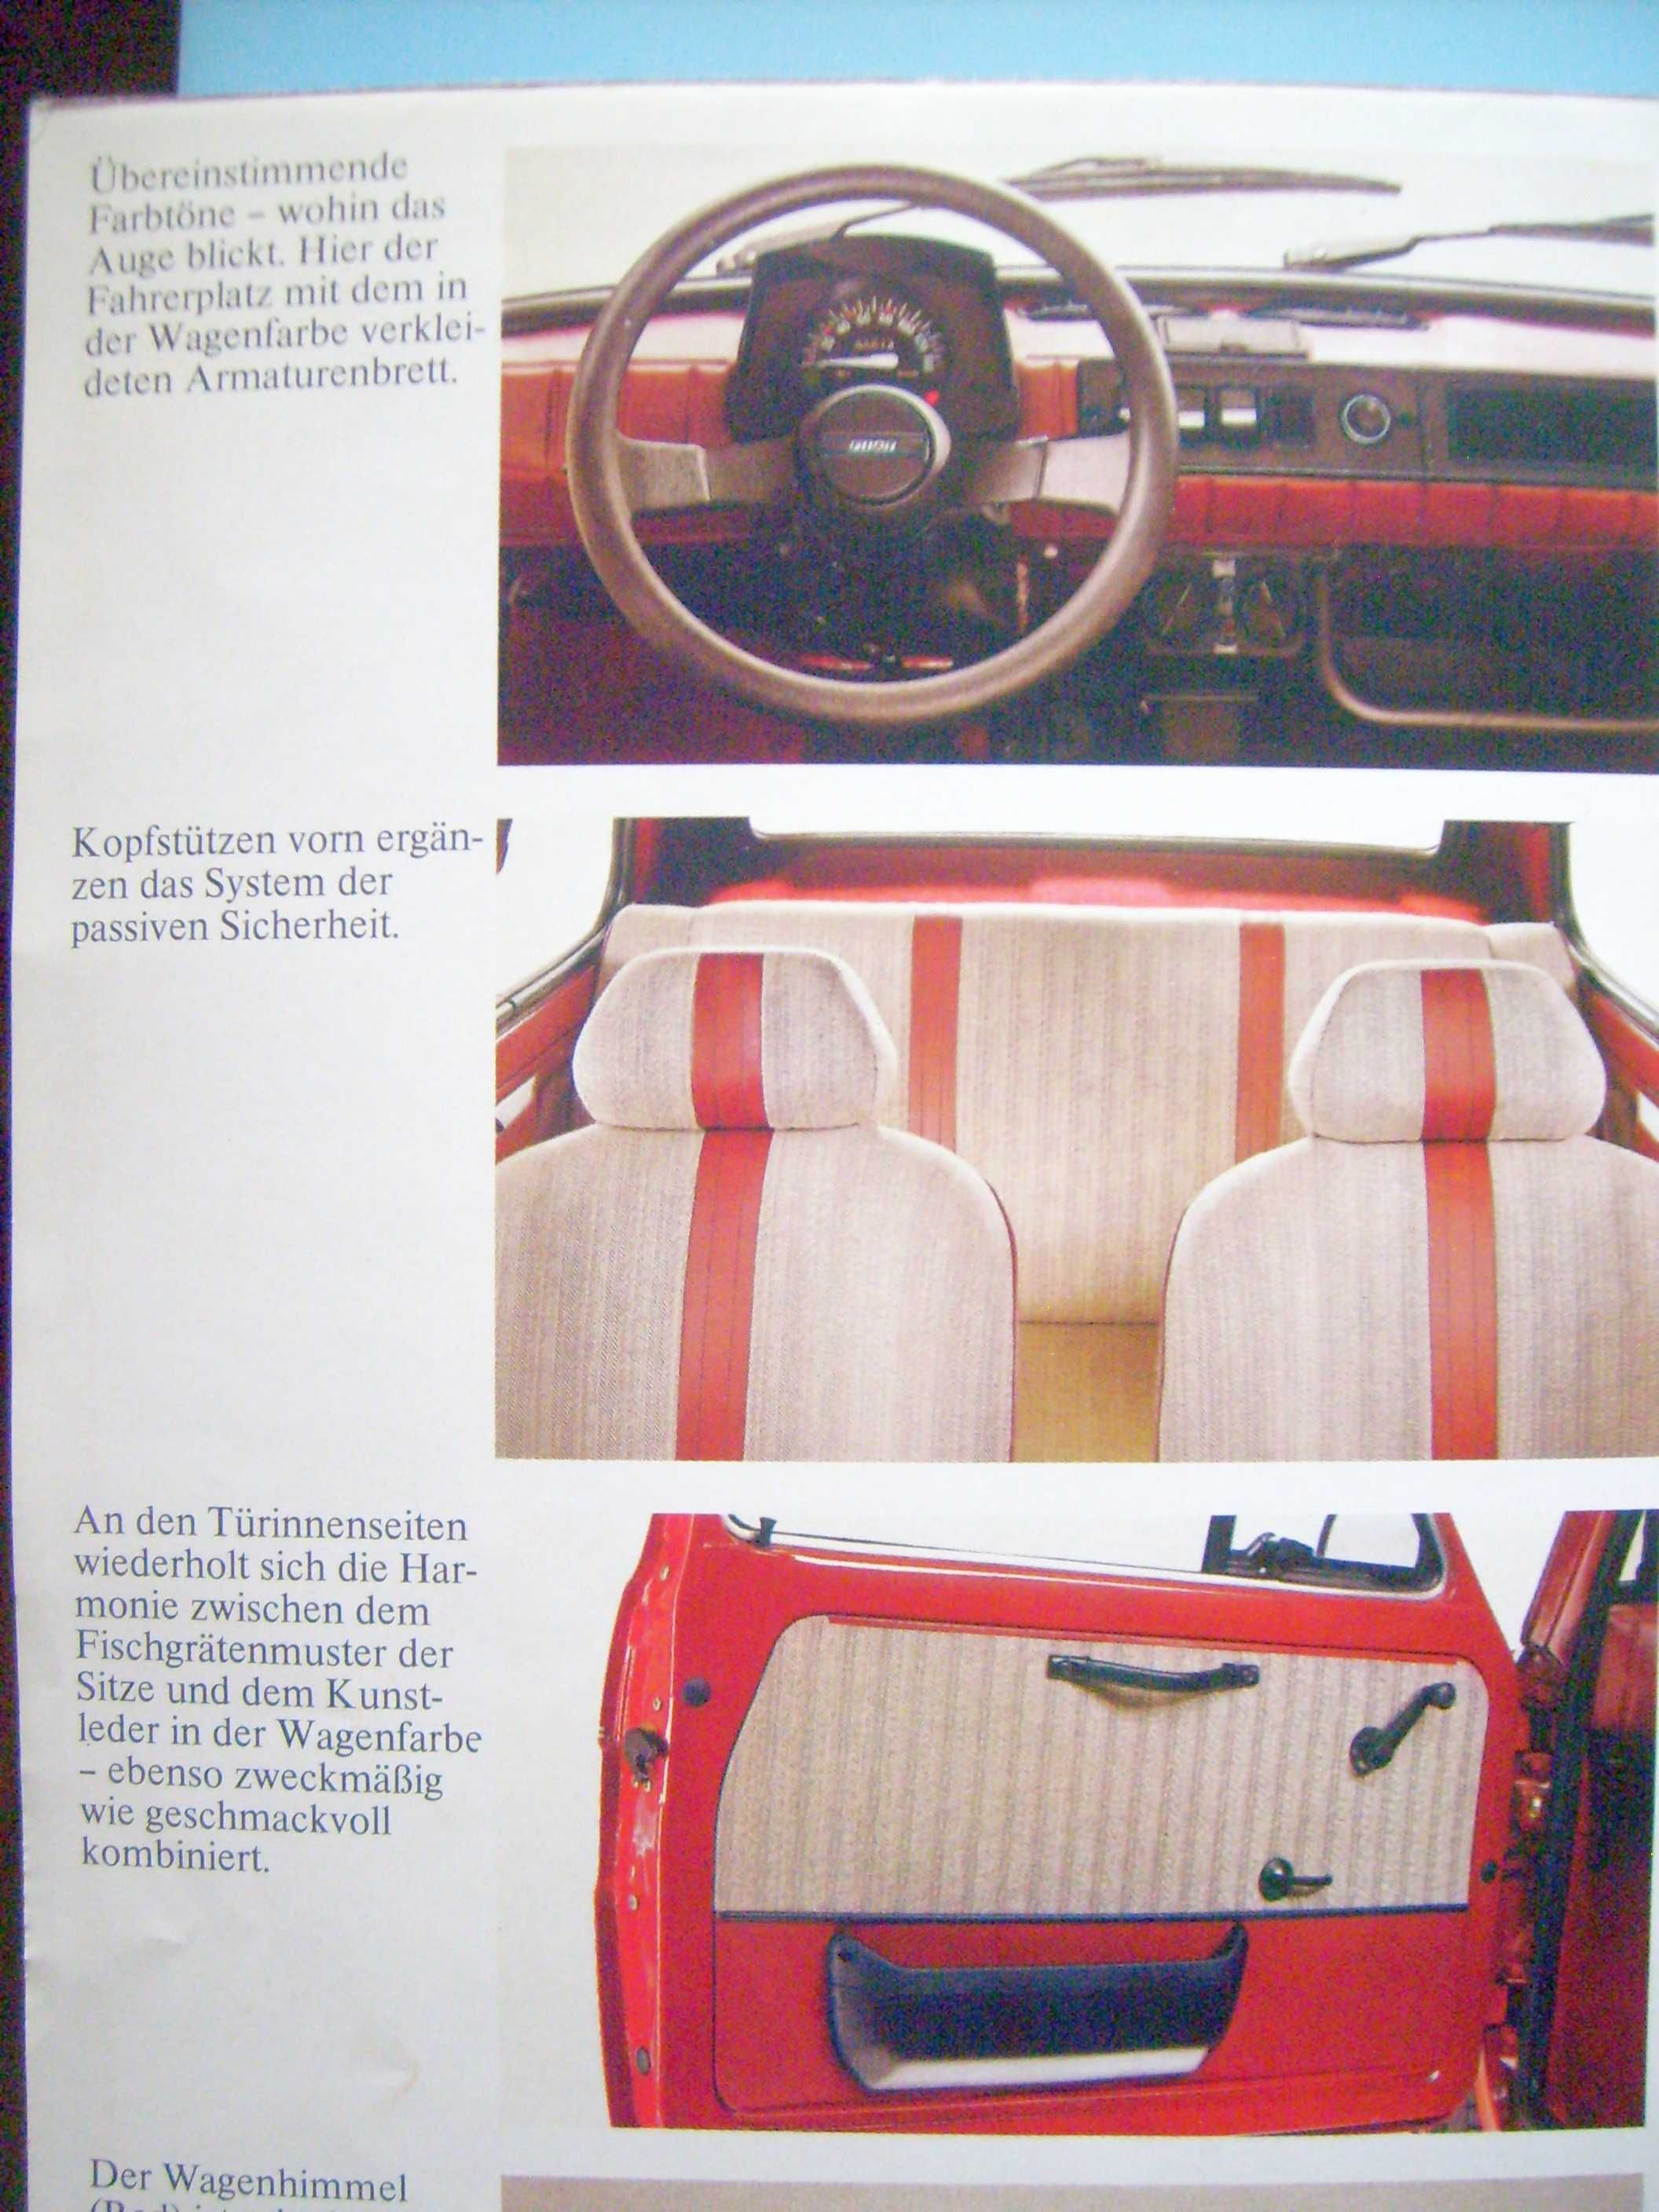 FIAT 126 Red & Brown 1980 / prospekt 16 str. rozkładany do formatu A1